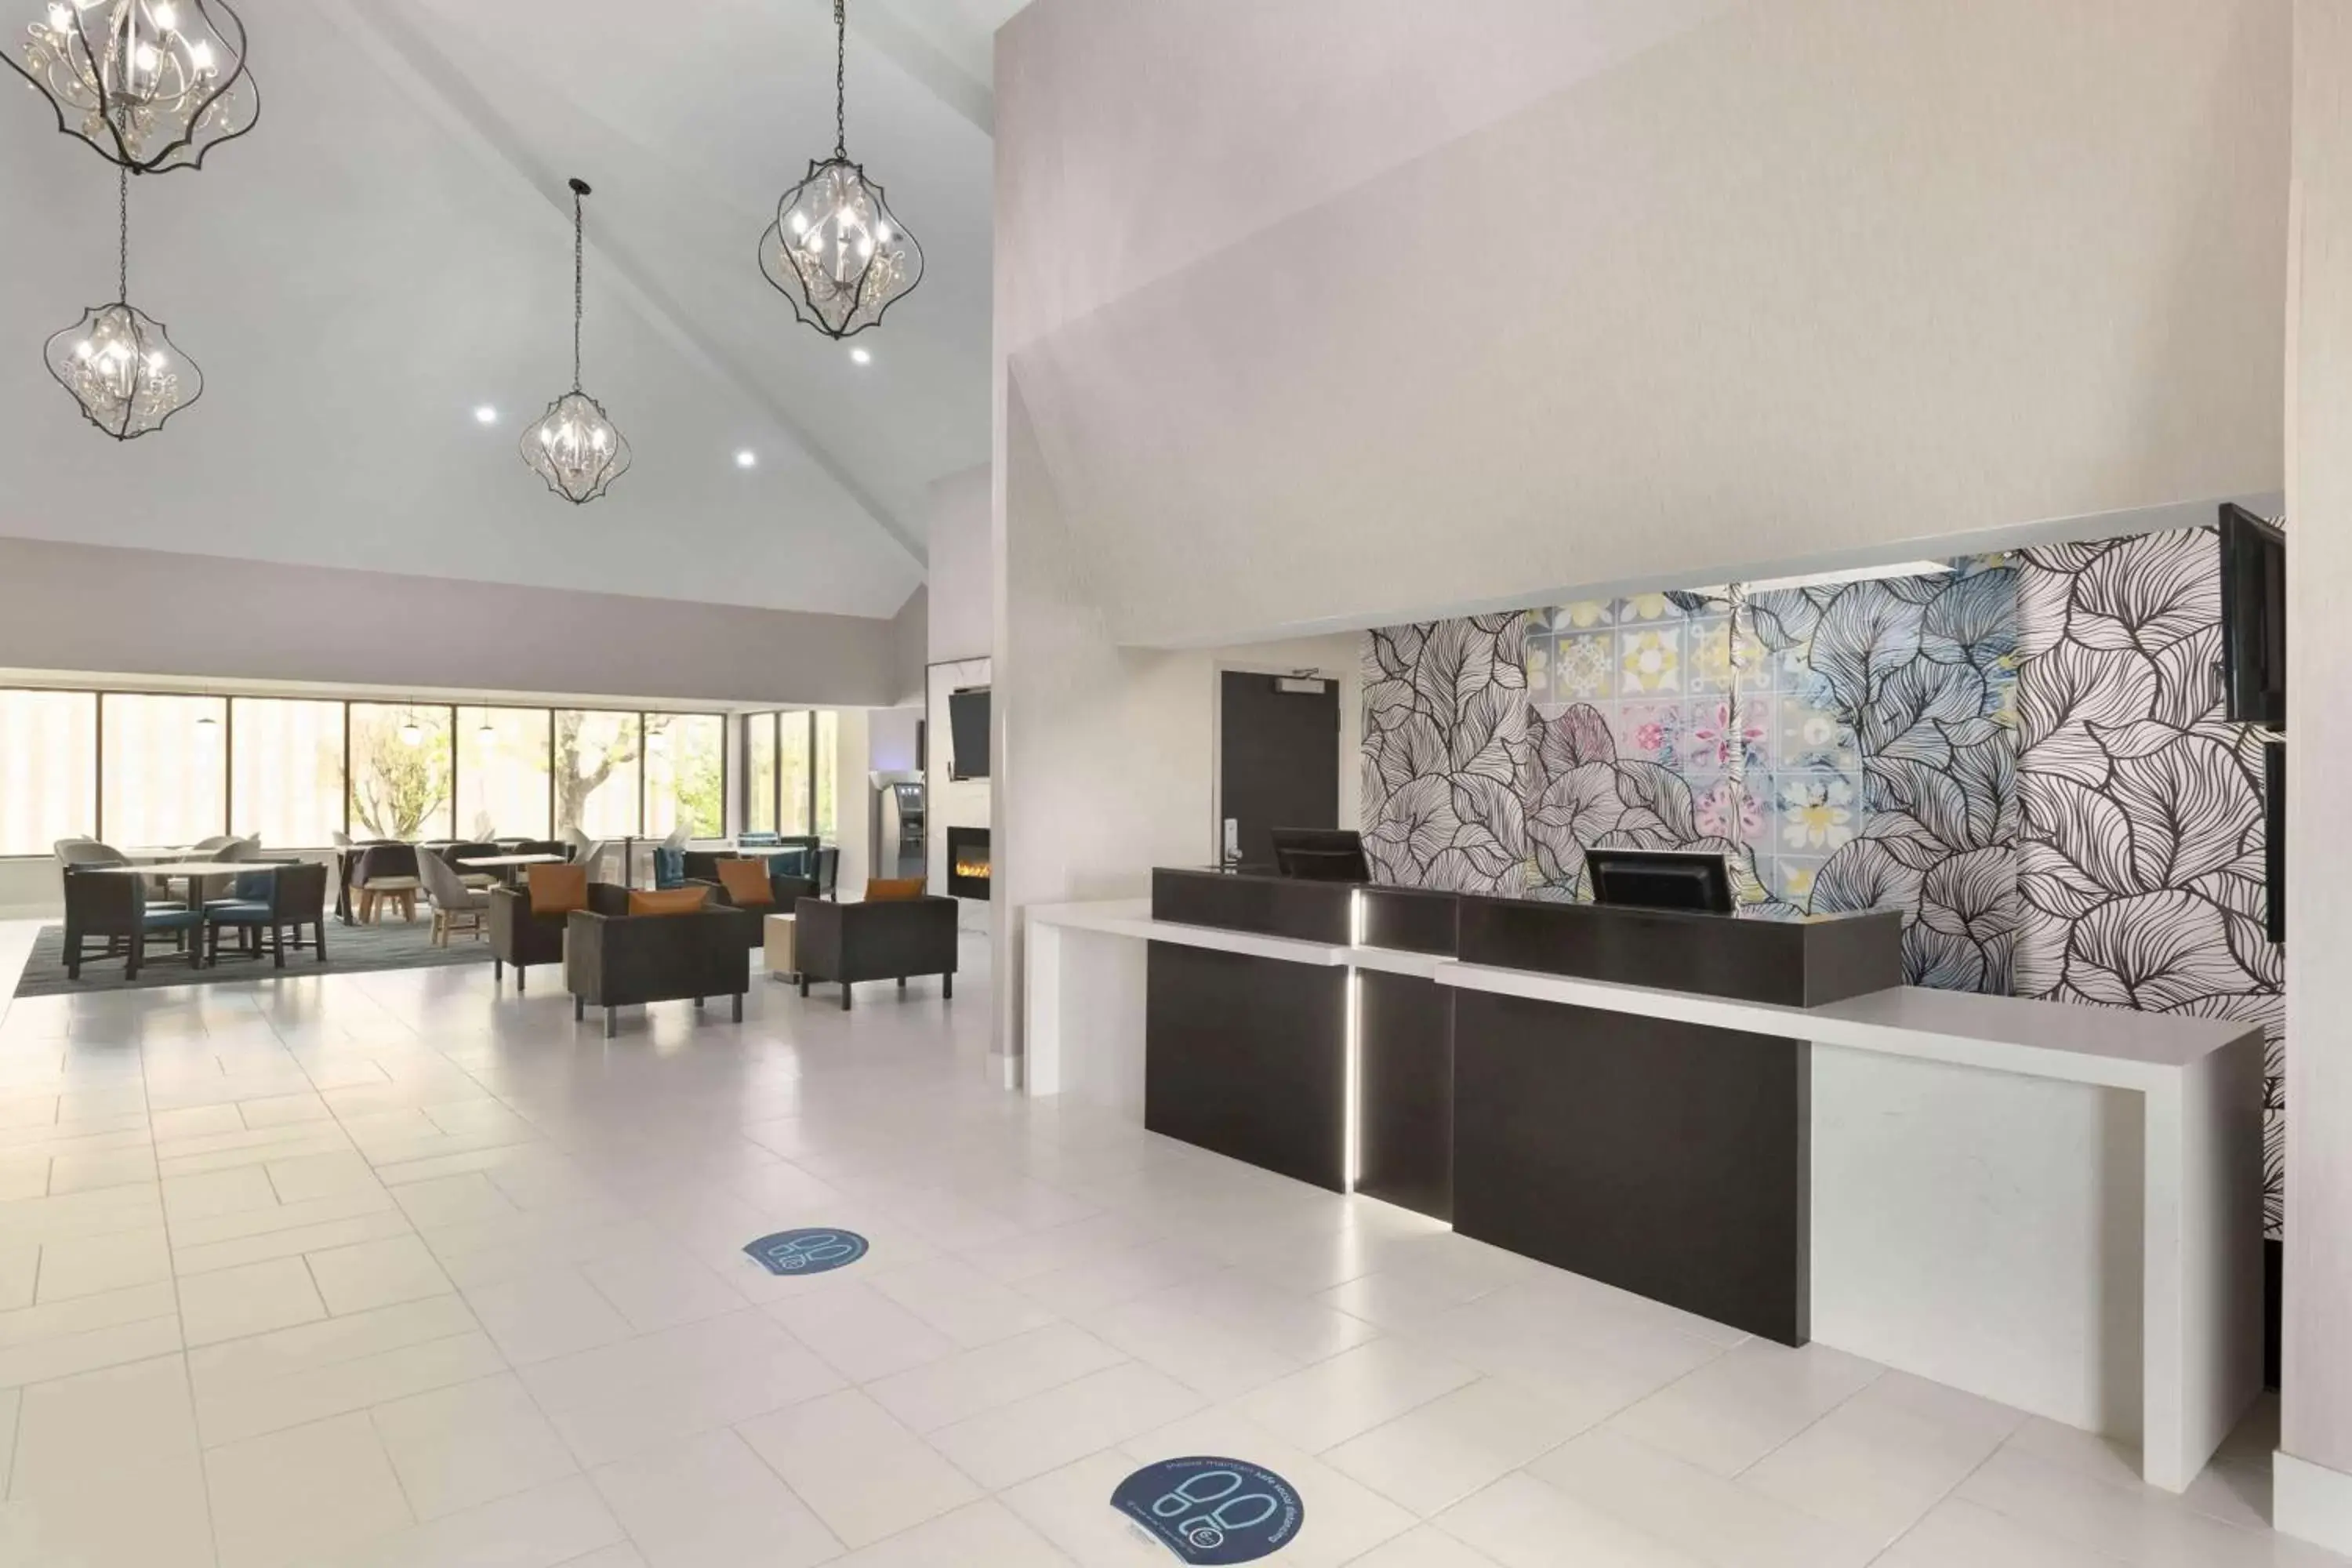 Lobby or reception in La Quinta Inn & Suites by Wyndham Dothan